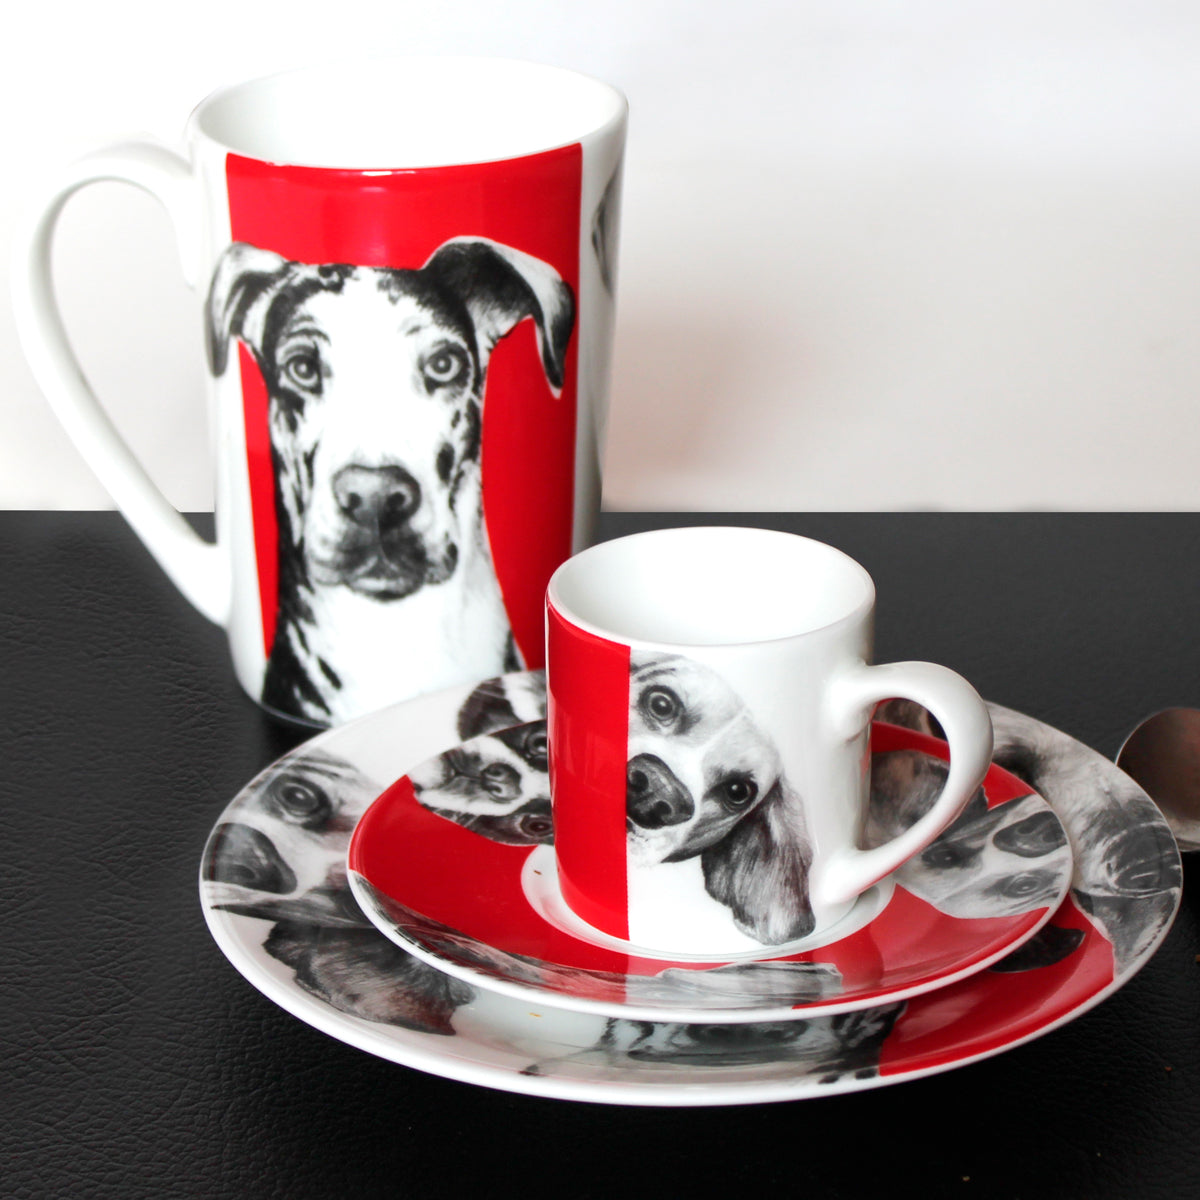 Dogs tazzina espresso & piattino - espresso cup & saucer